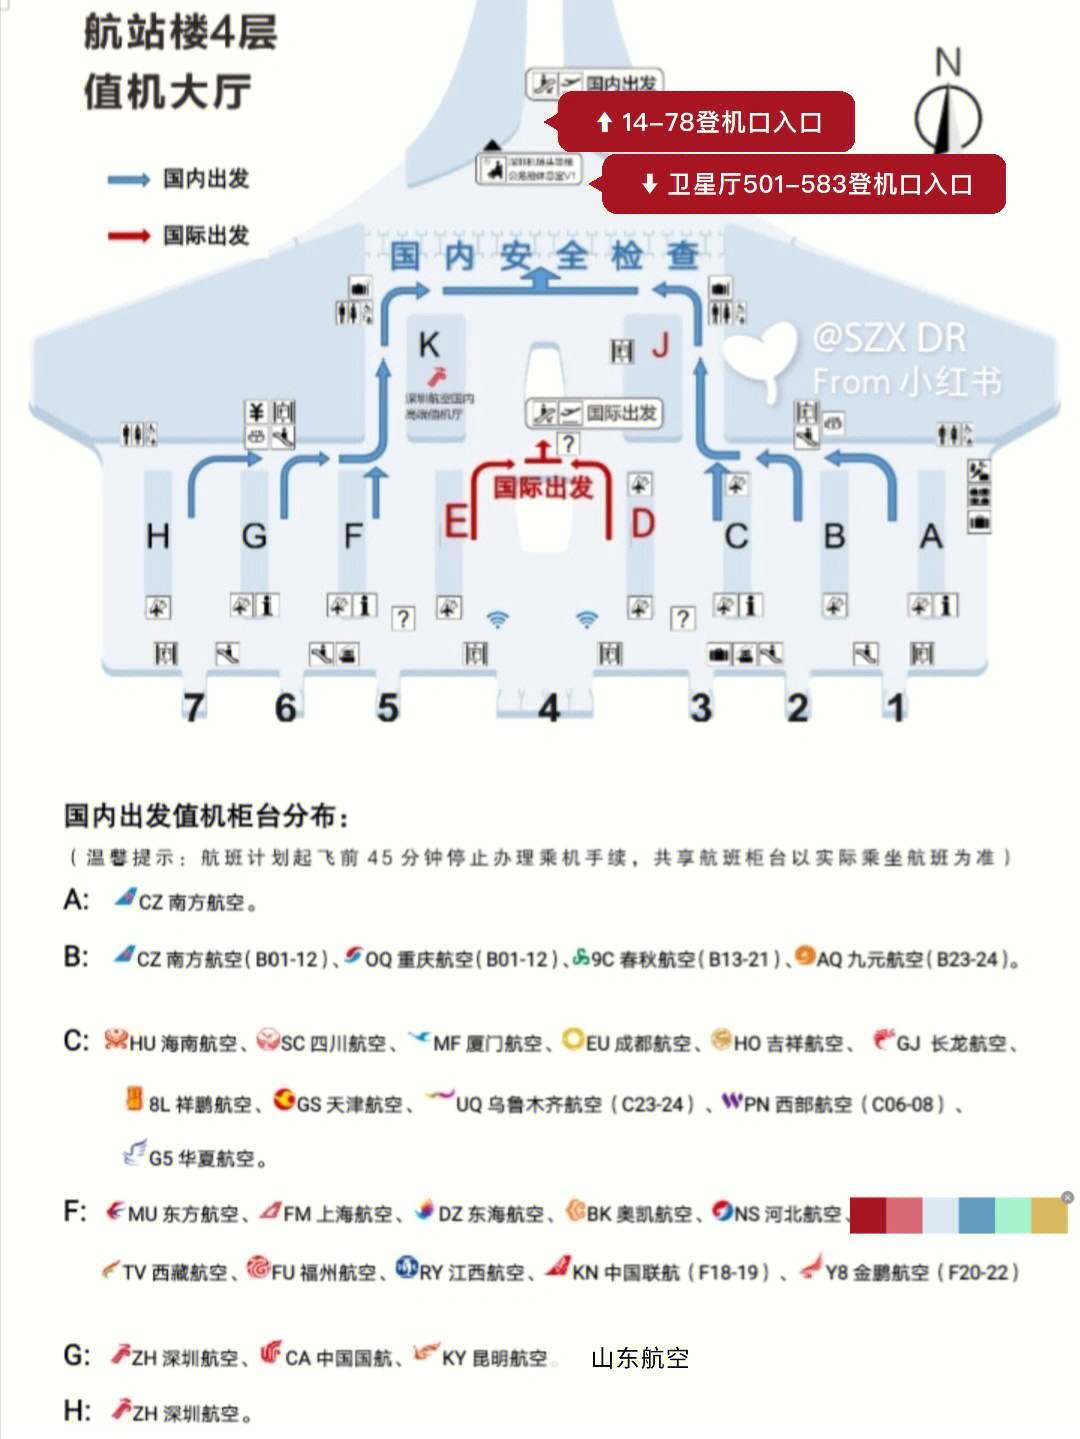 深圳机场国内出发值机登机口分布